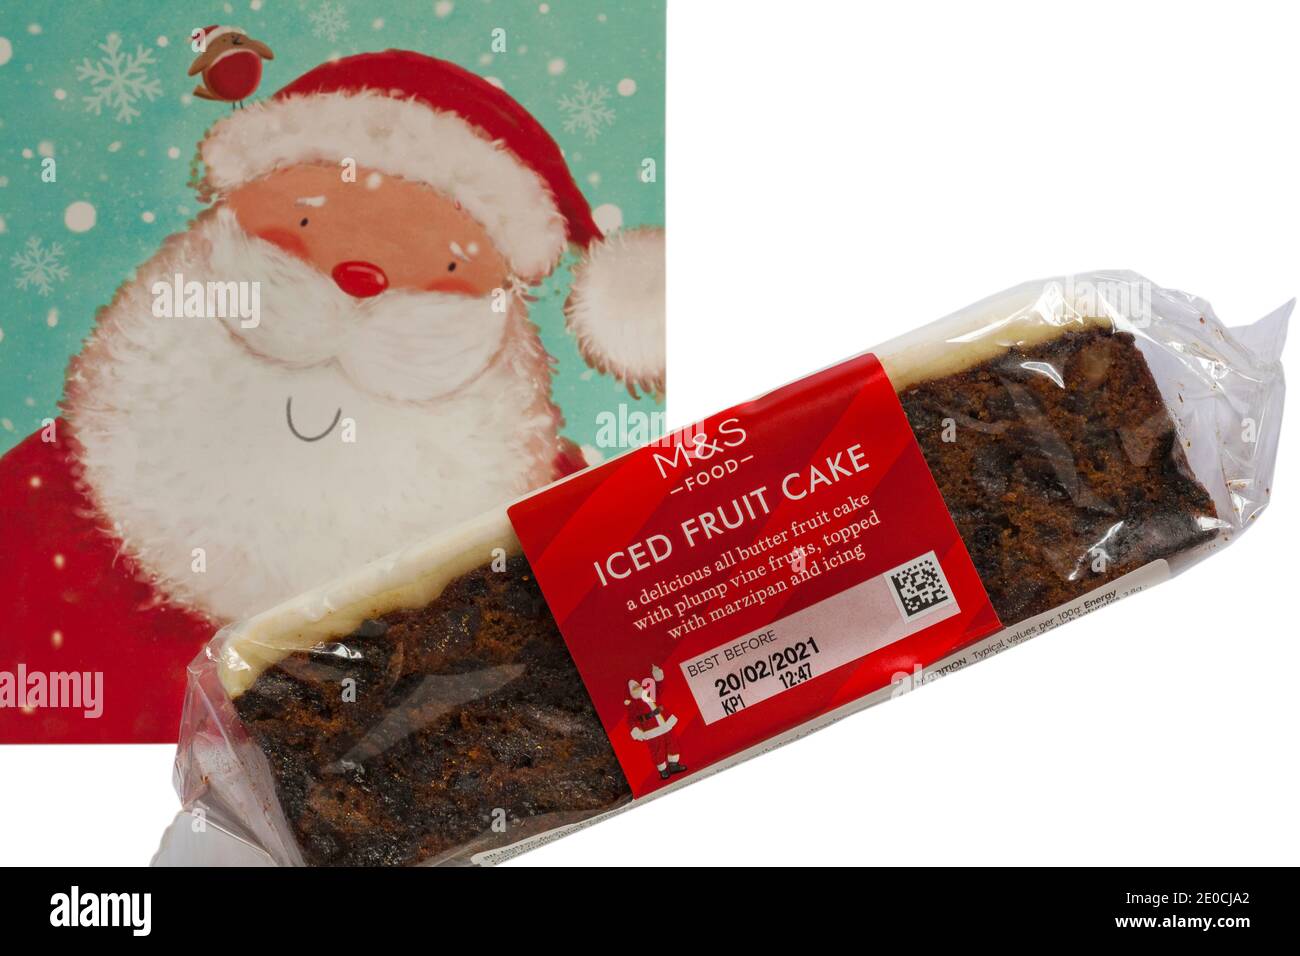 M&S Iced Fruit Cake Christmas Cake with Father Christmas Santa Claus card set on white background - UK festive Xmas Stock Photo